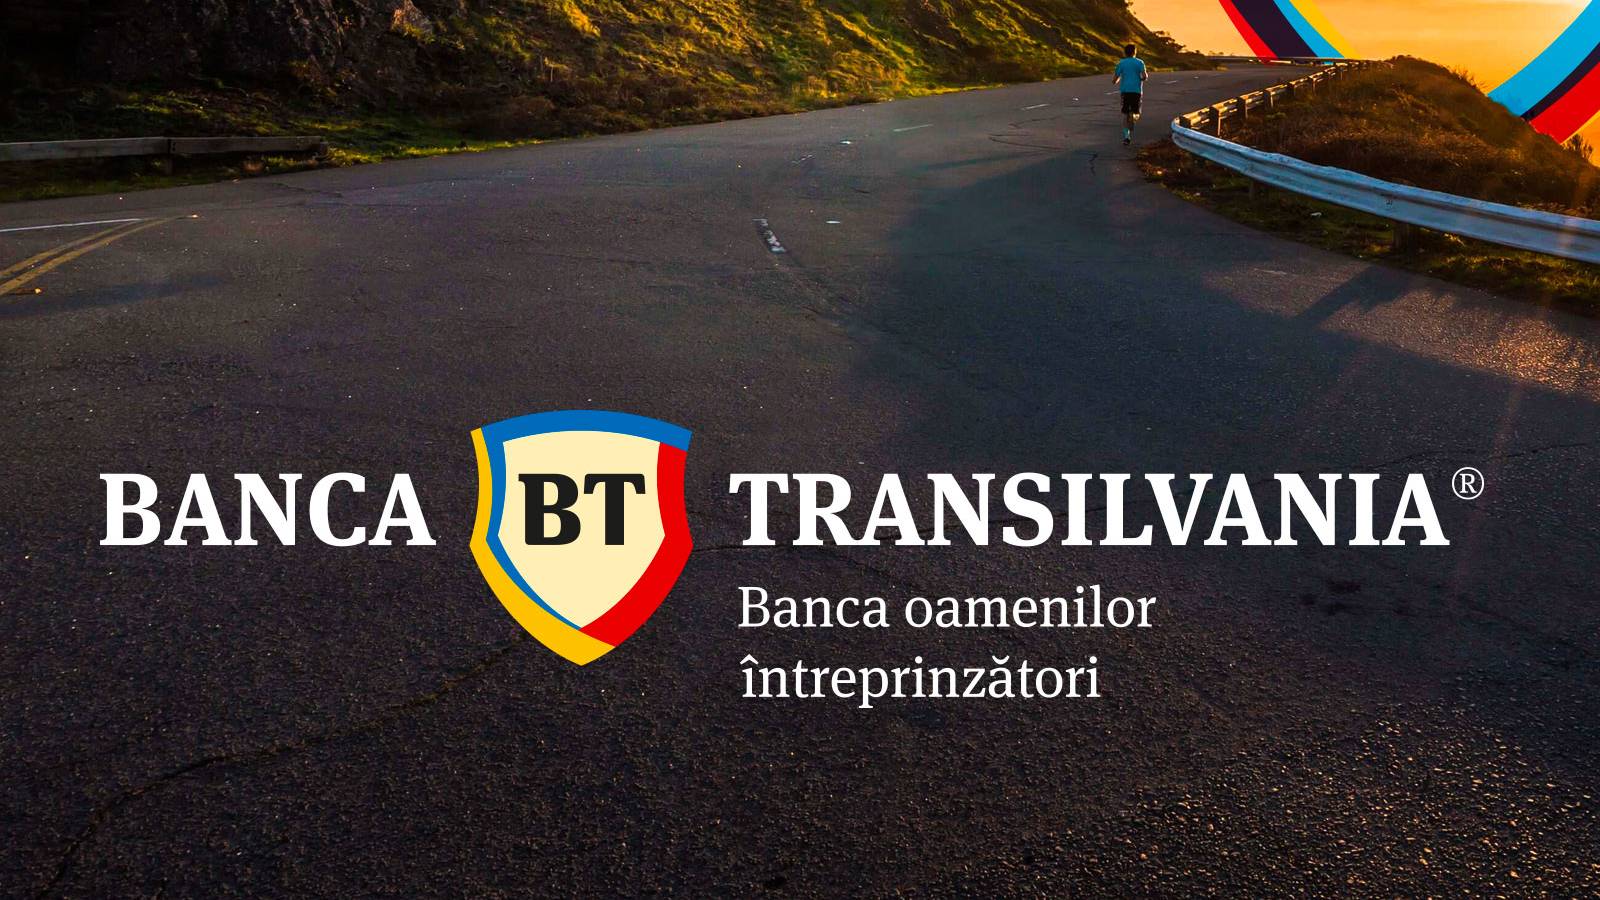 BANCA Transilvania tilbyder